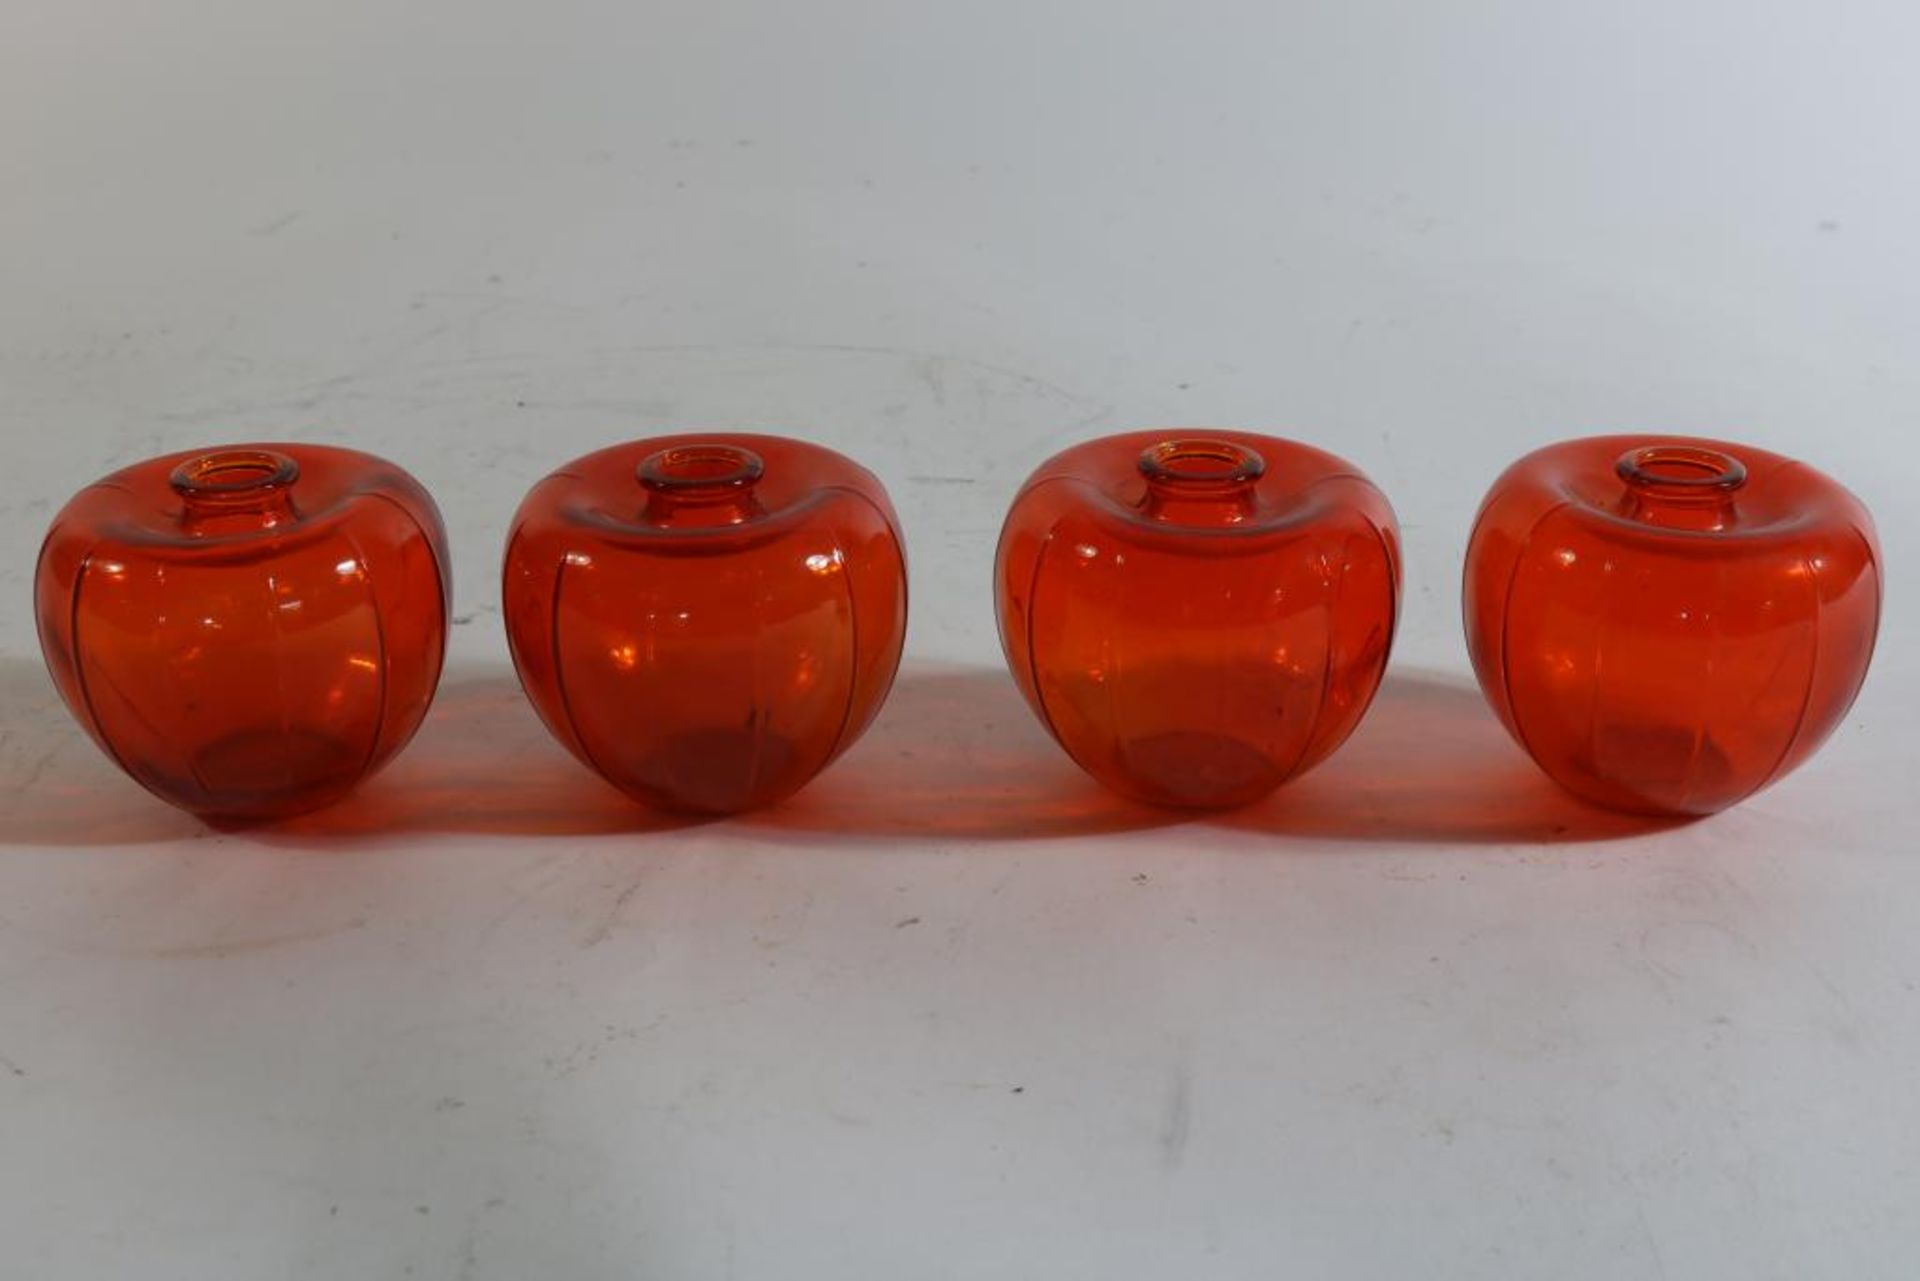 Serie van 4 Leerdam oranje vaasjes, ontwerpen A.D. Copier, het zogenaamde bevrijdingsvaasje uit